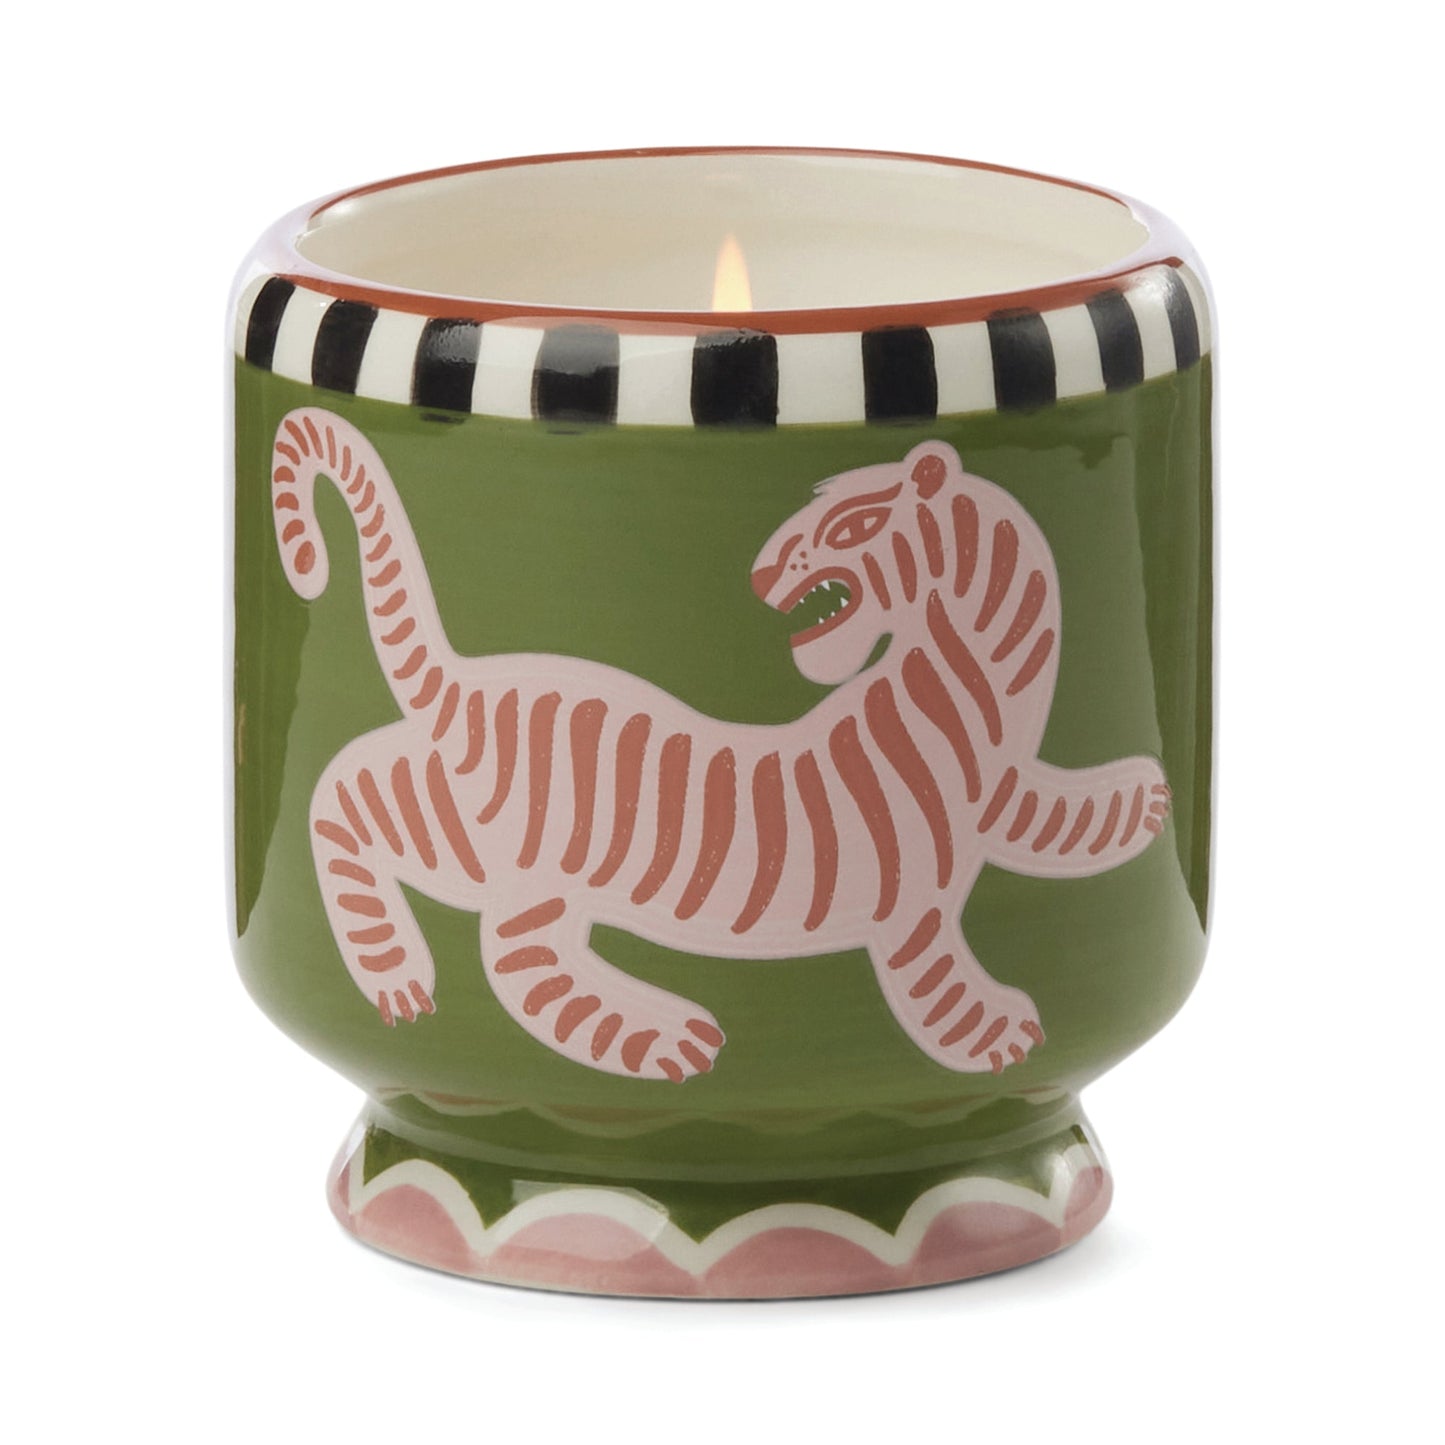 Adopo 8 oz./226g Tiger Ceramic Candle - Black Cedar & Fig